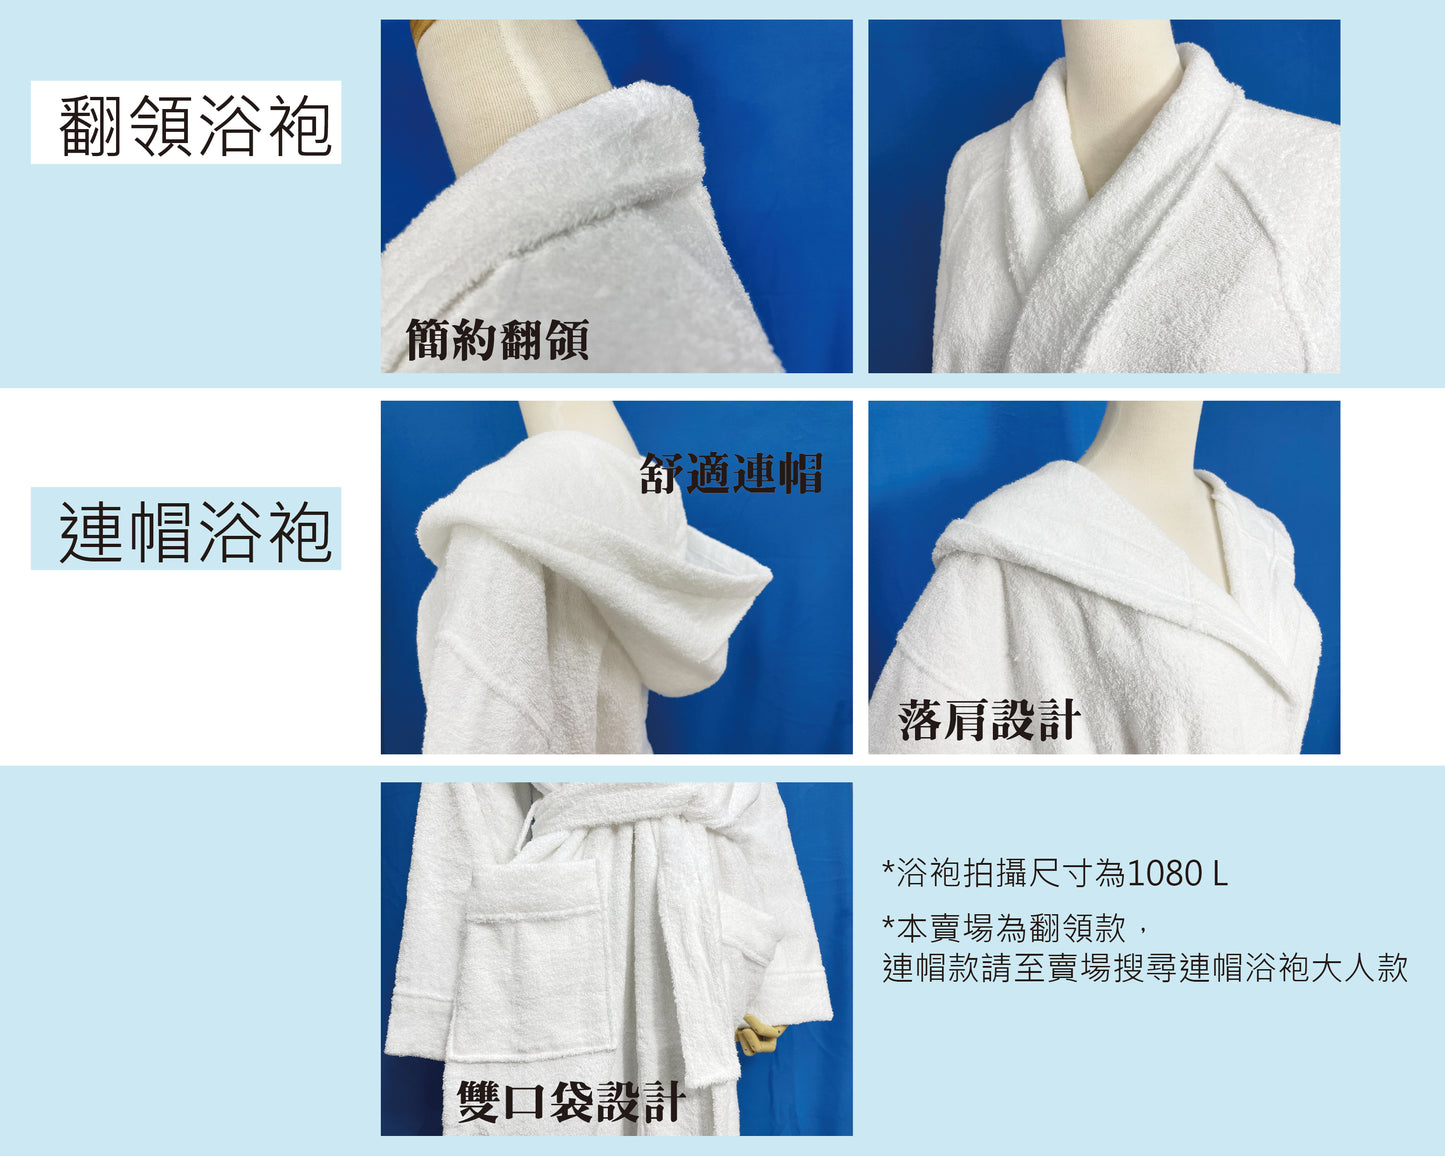 【Dayi Towel】Cotton lapel bathrobe